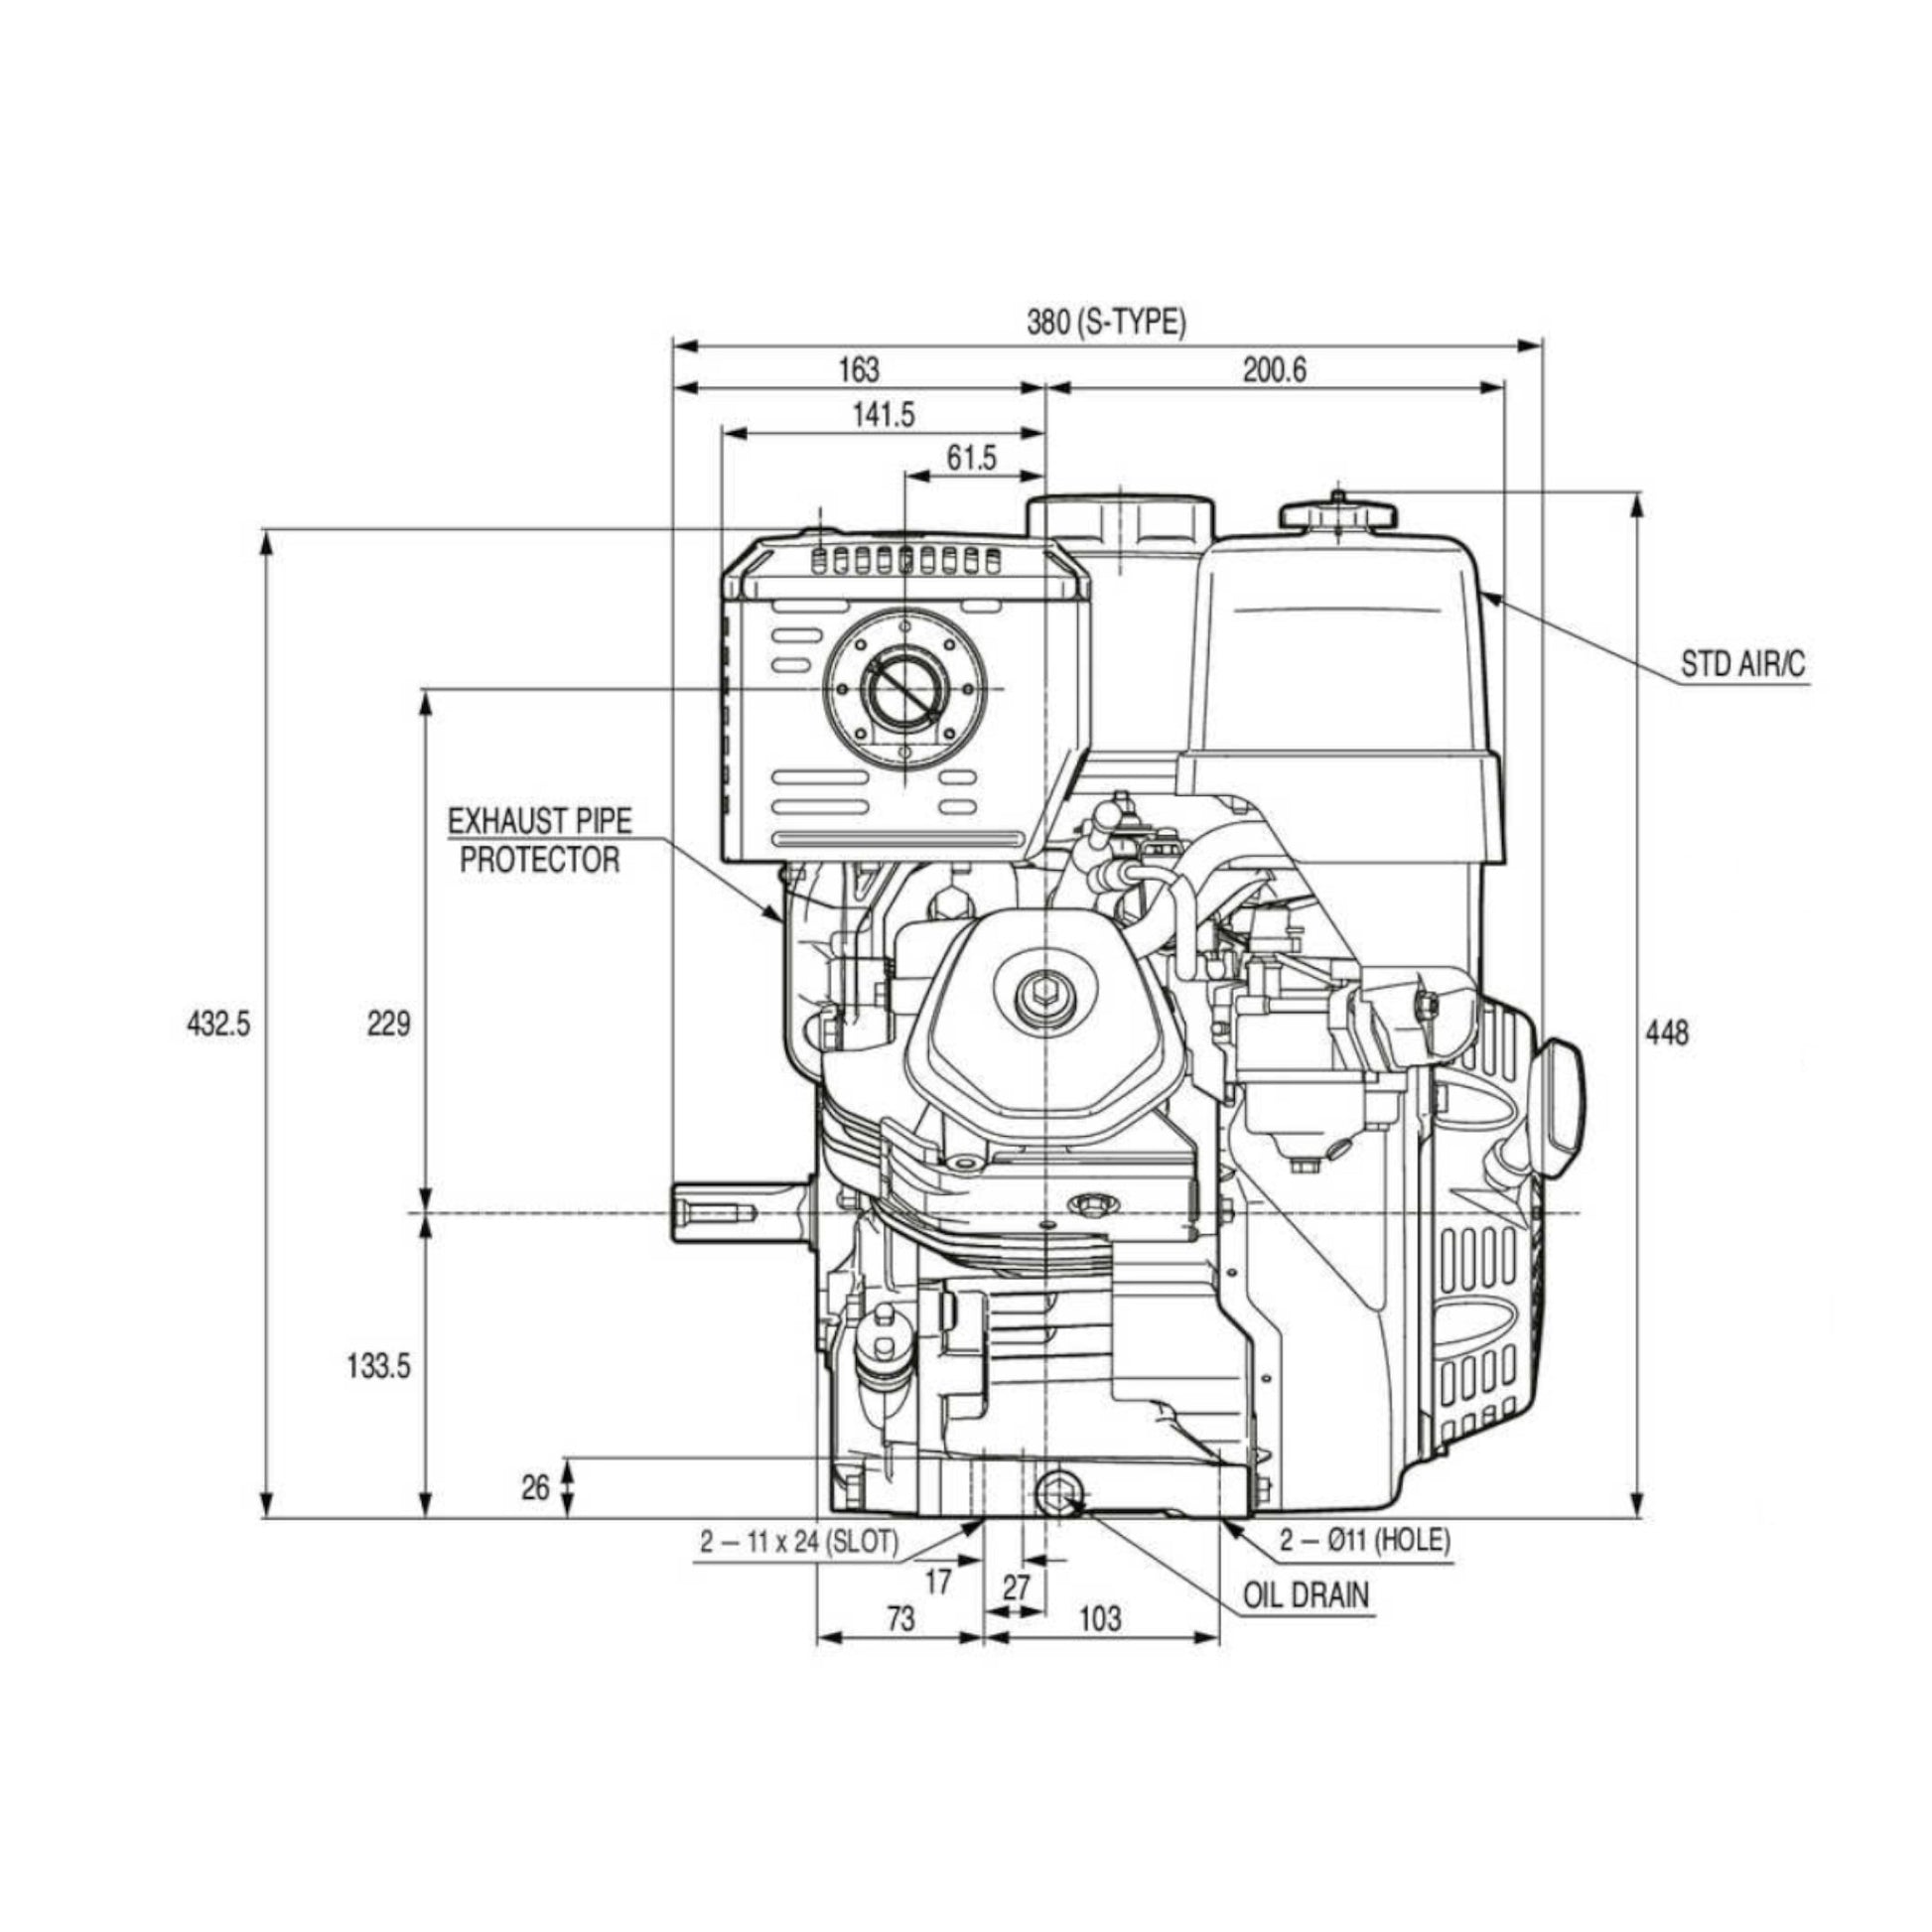 Honda GX390 13 HP Engine